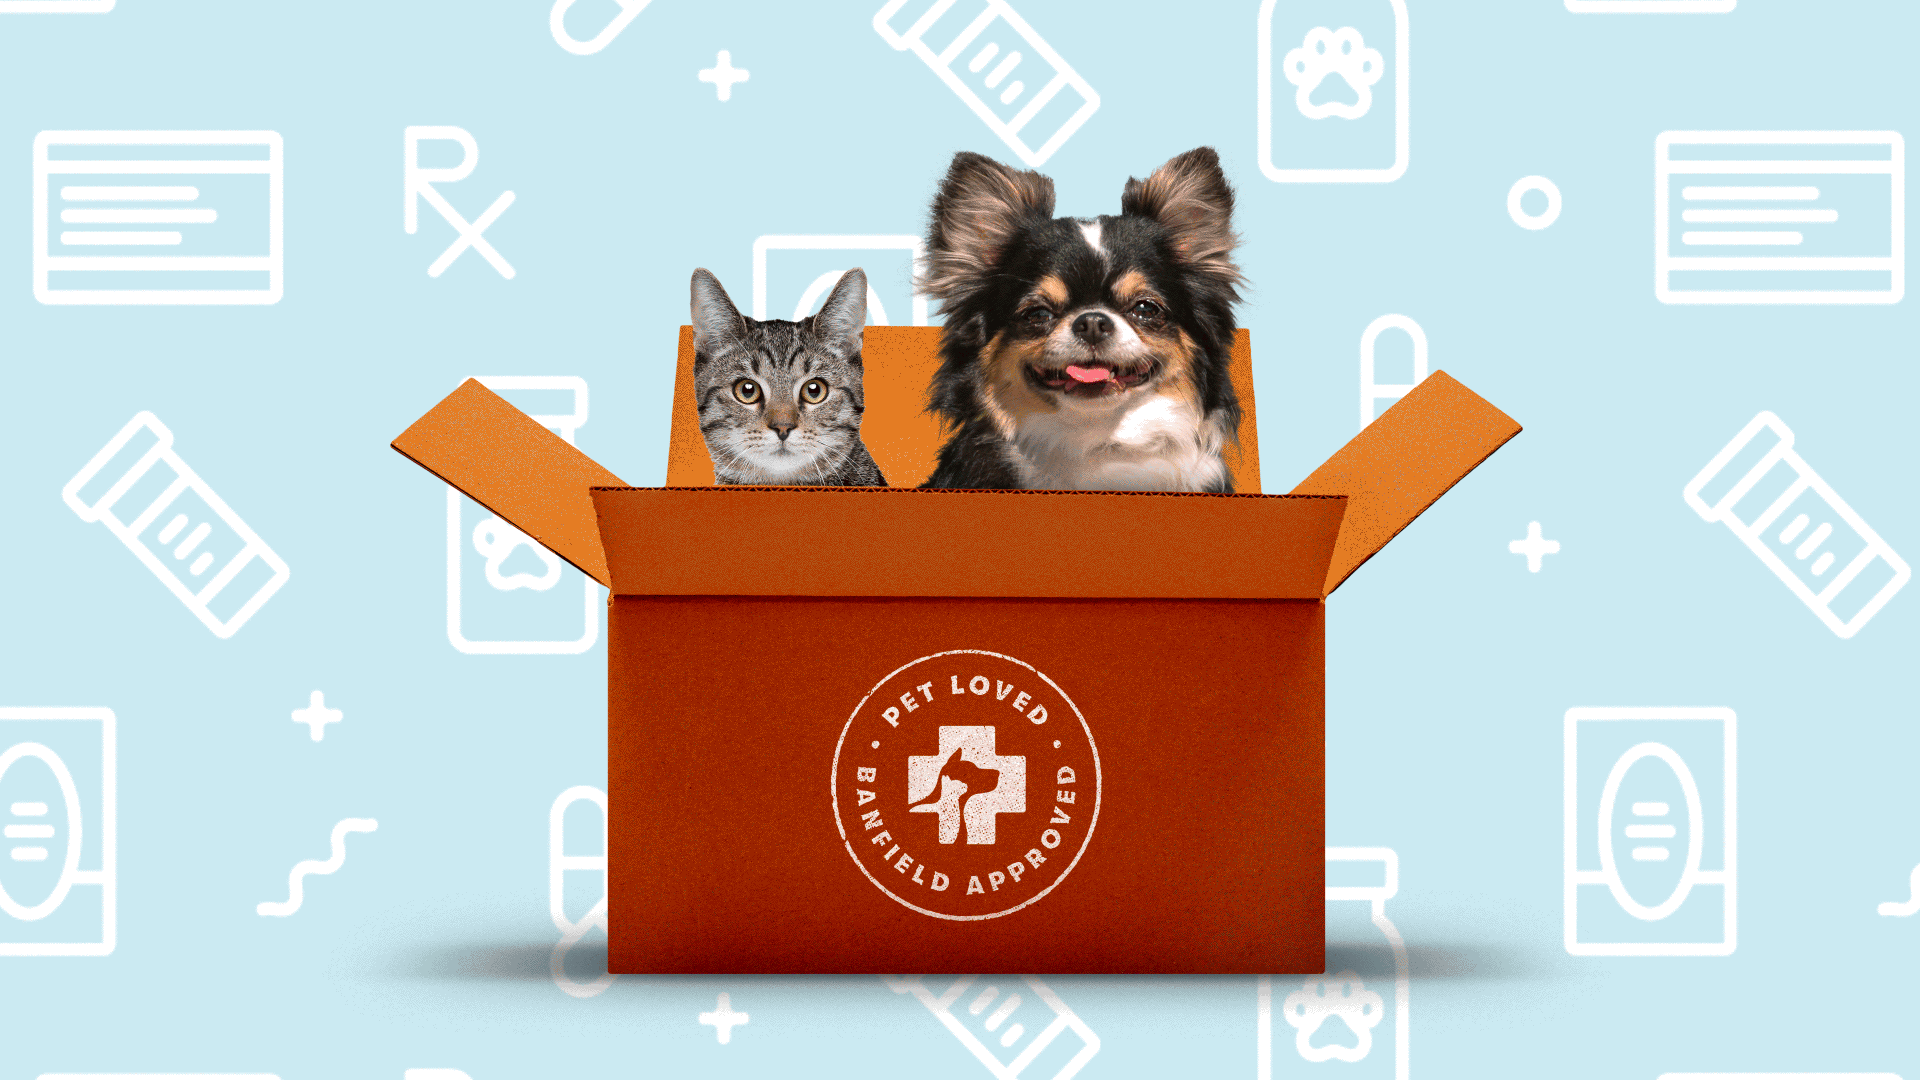 Cute cat and dog sit in cardboard box